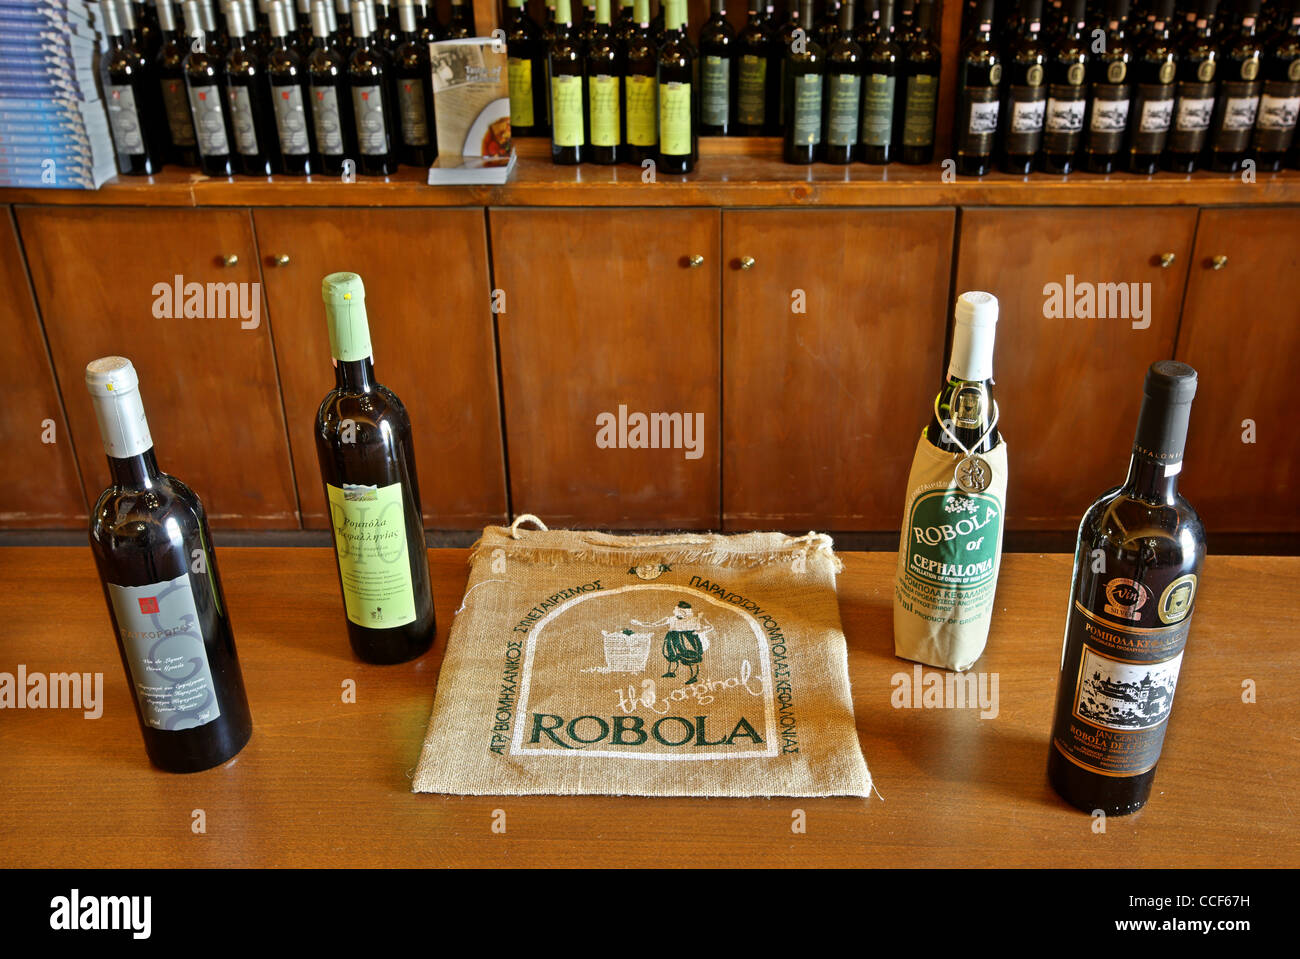 Der berühmte Wein von Kefalonia, die "Robola" aus dem Robola kooperative Weingut im Omala, Kefalonia Island, Griechenland Stockfoto